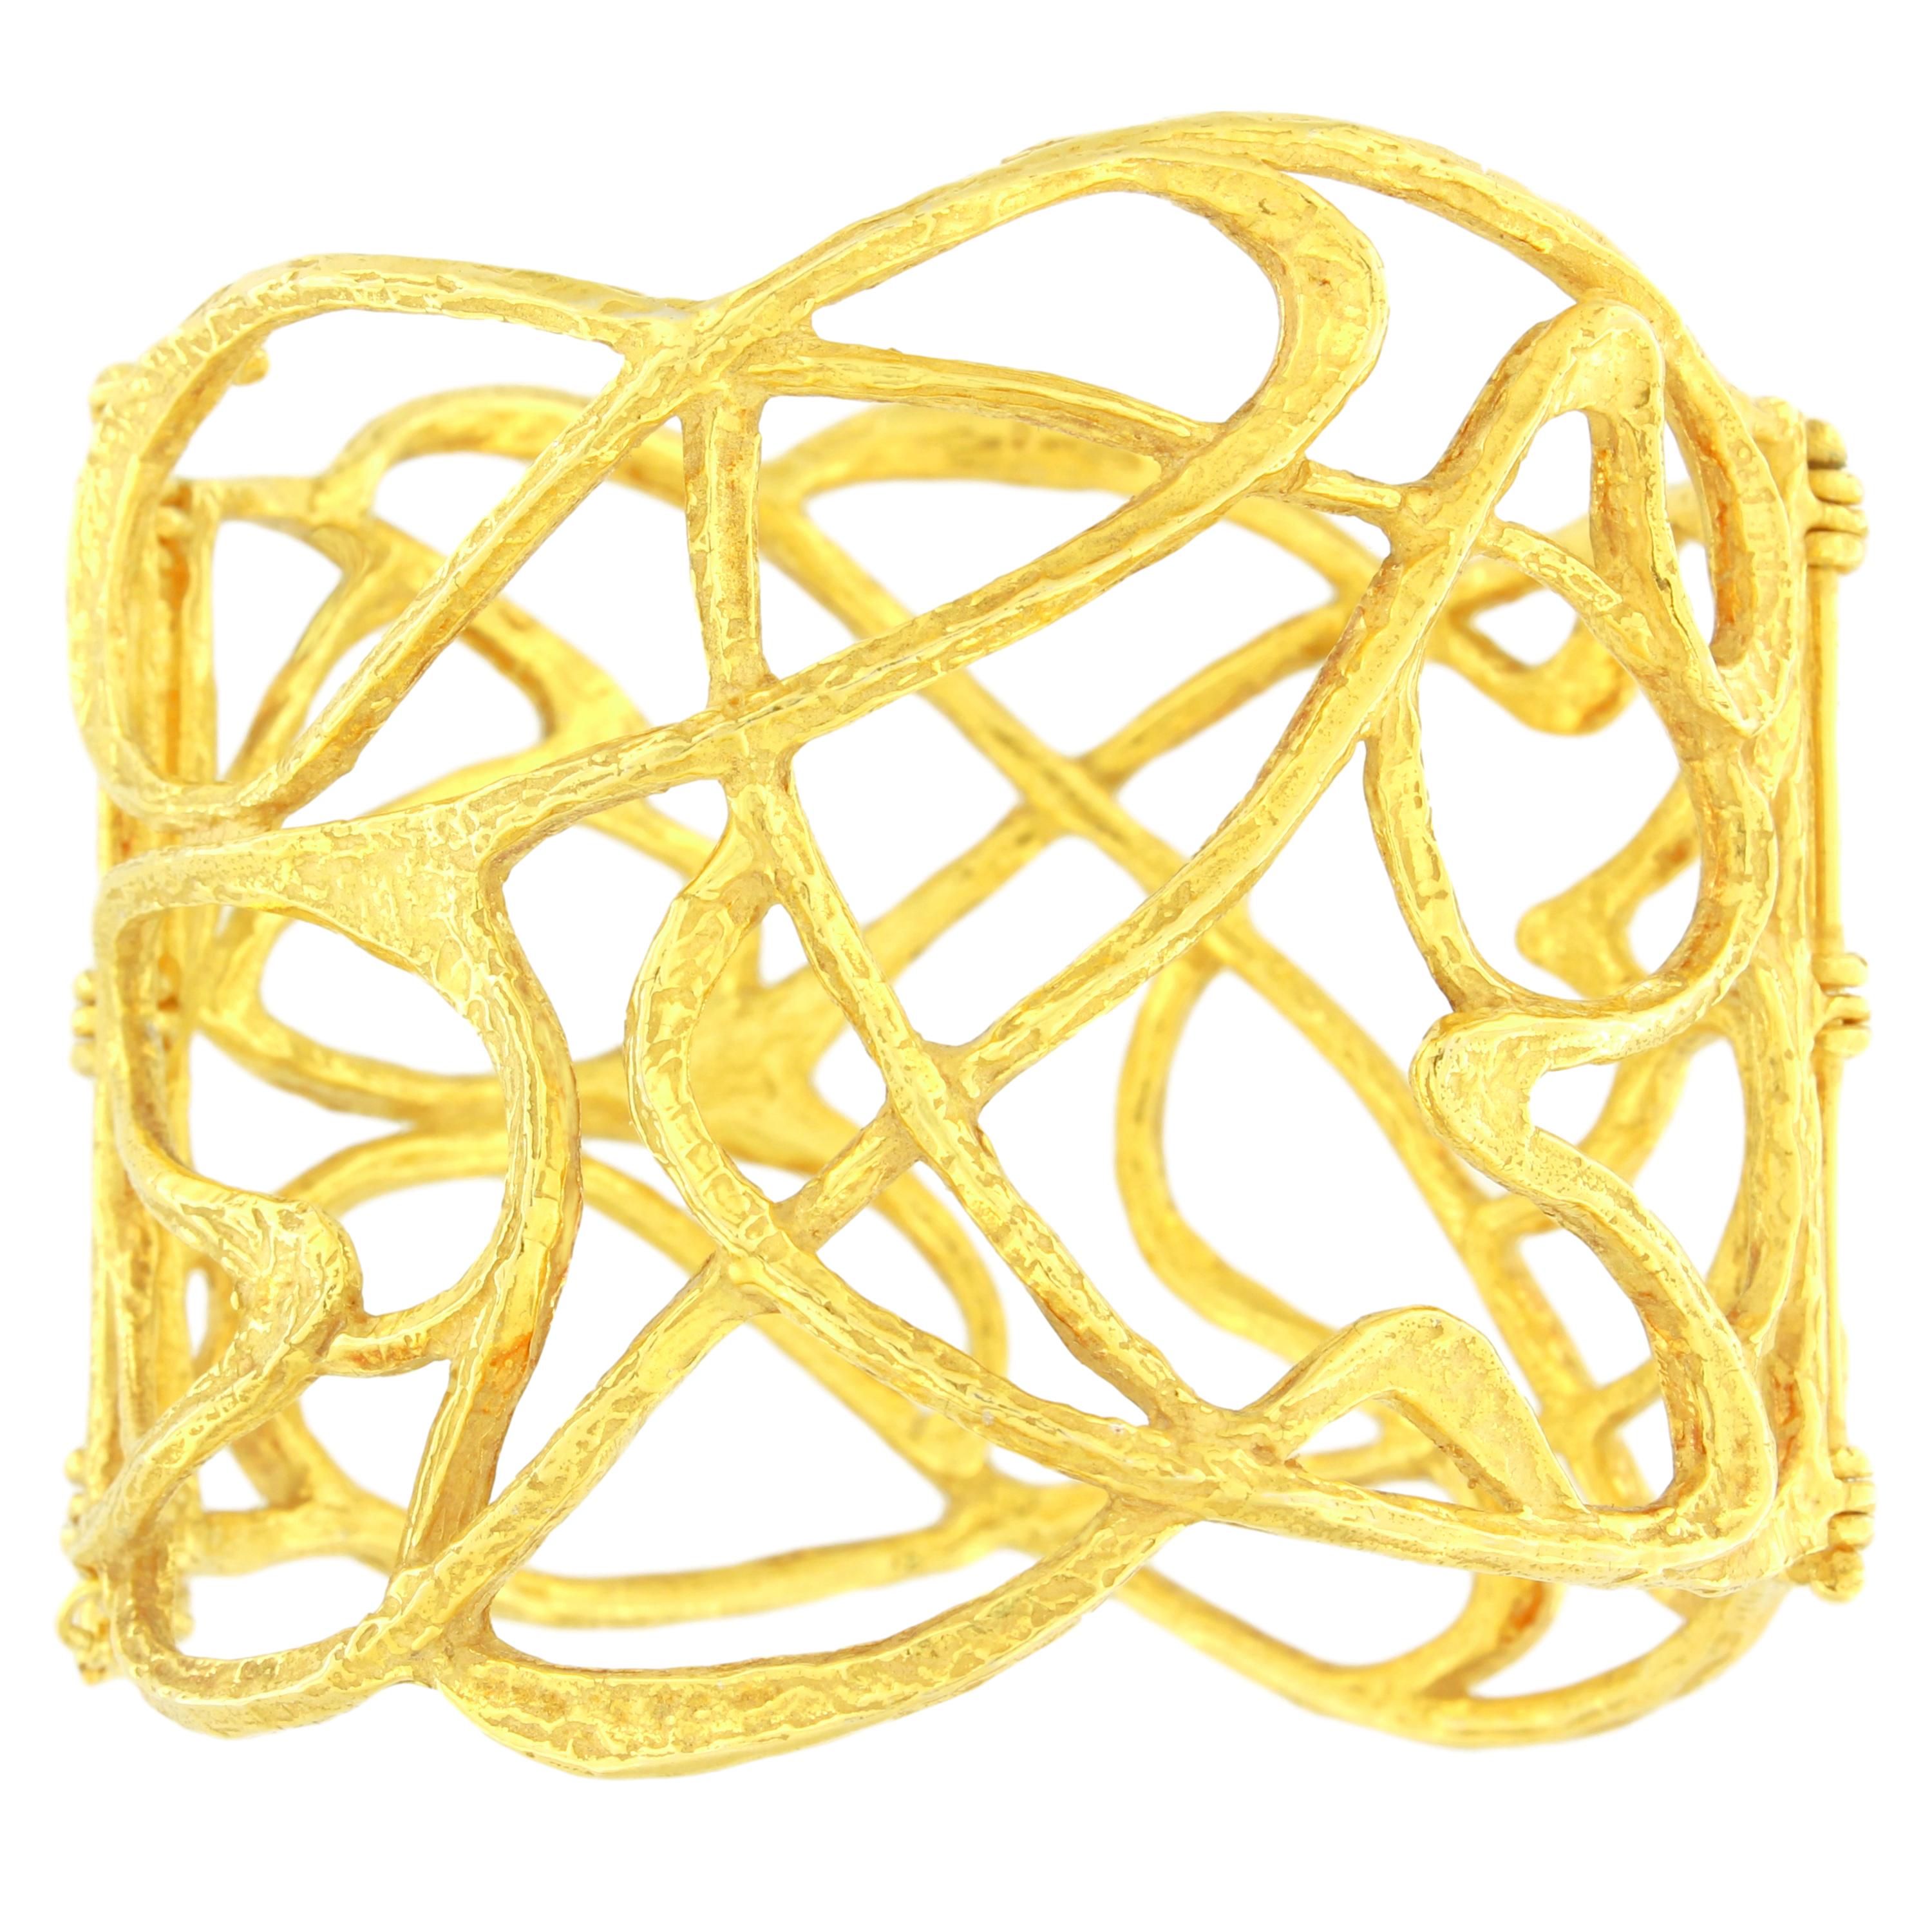 Sacchi Bracelet manchette en or jaune satiné 18 carats et fil métallique de style Art déco